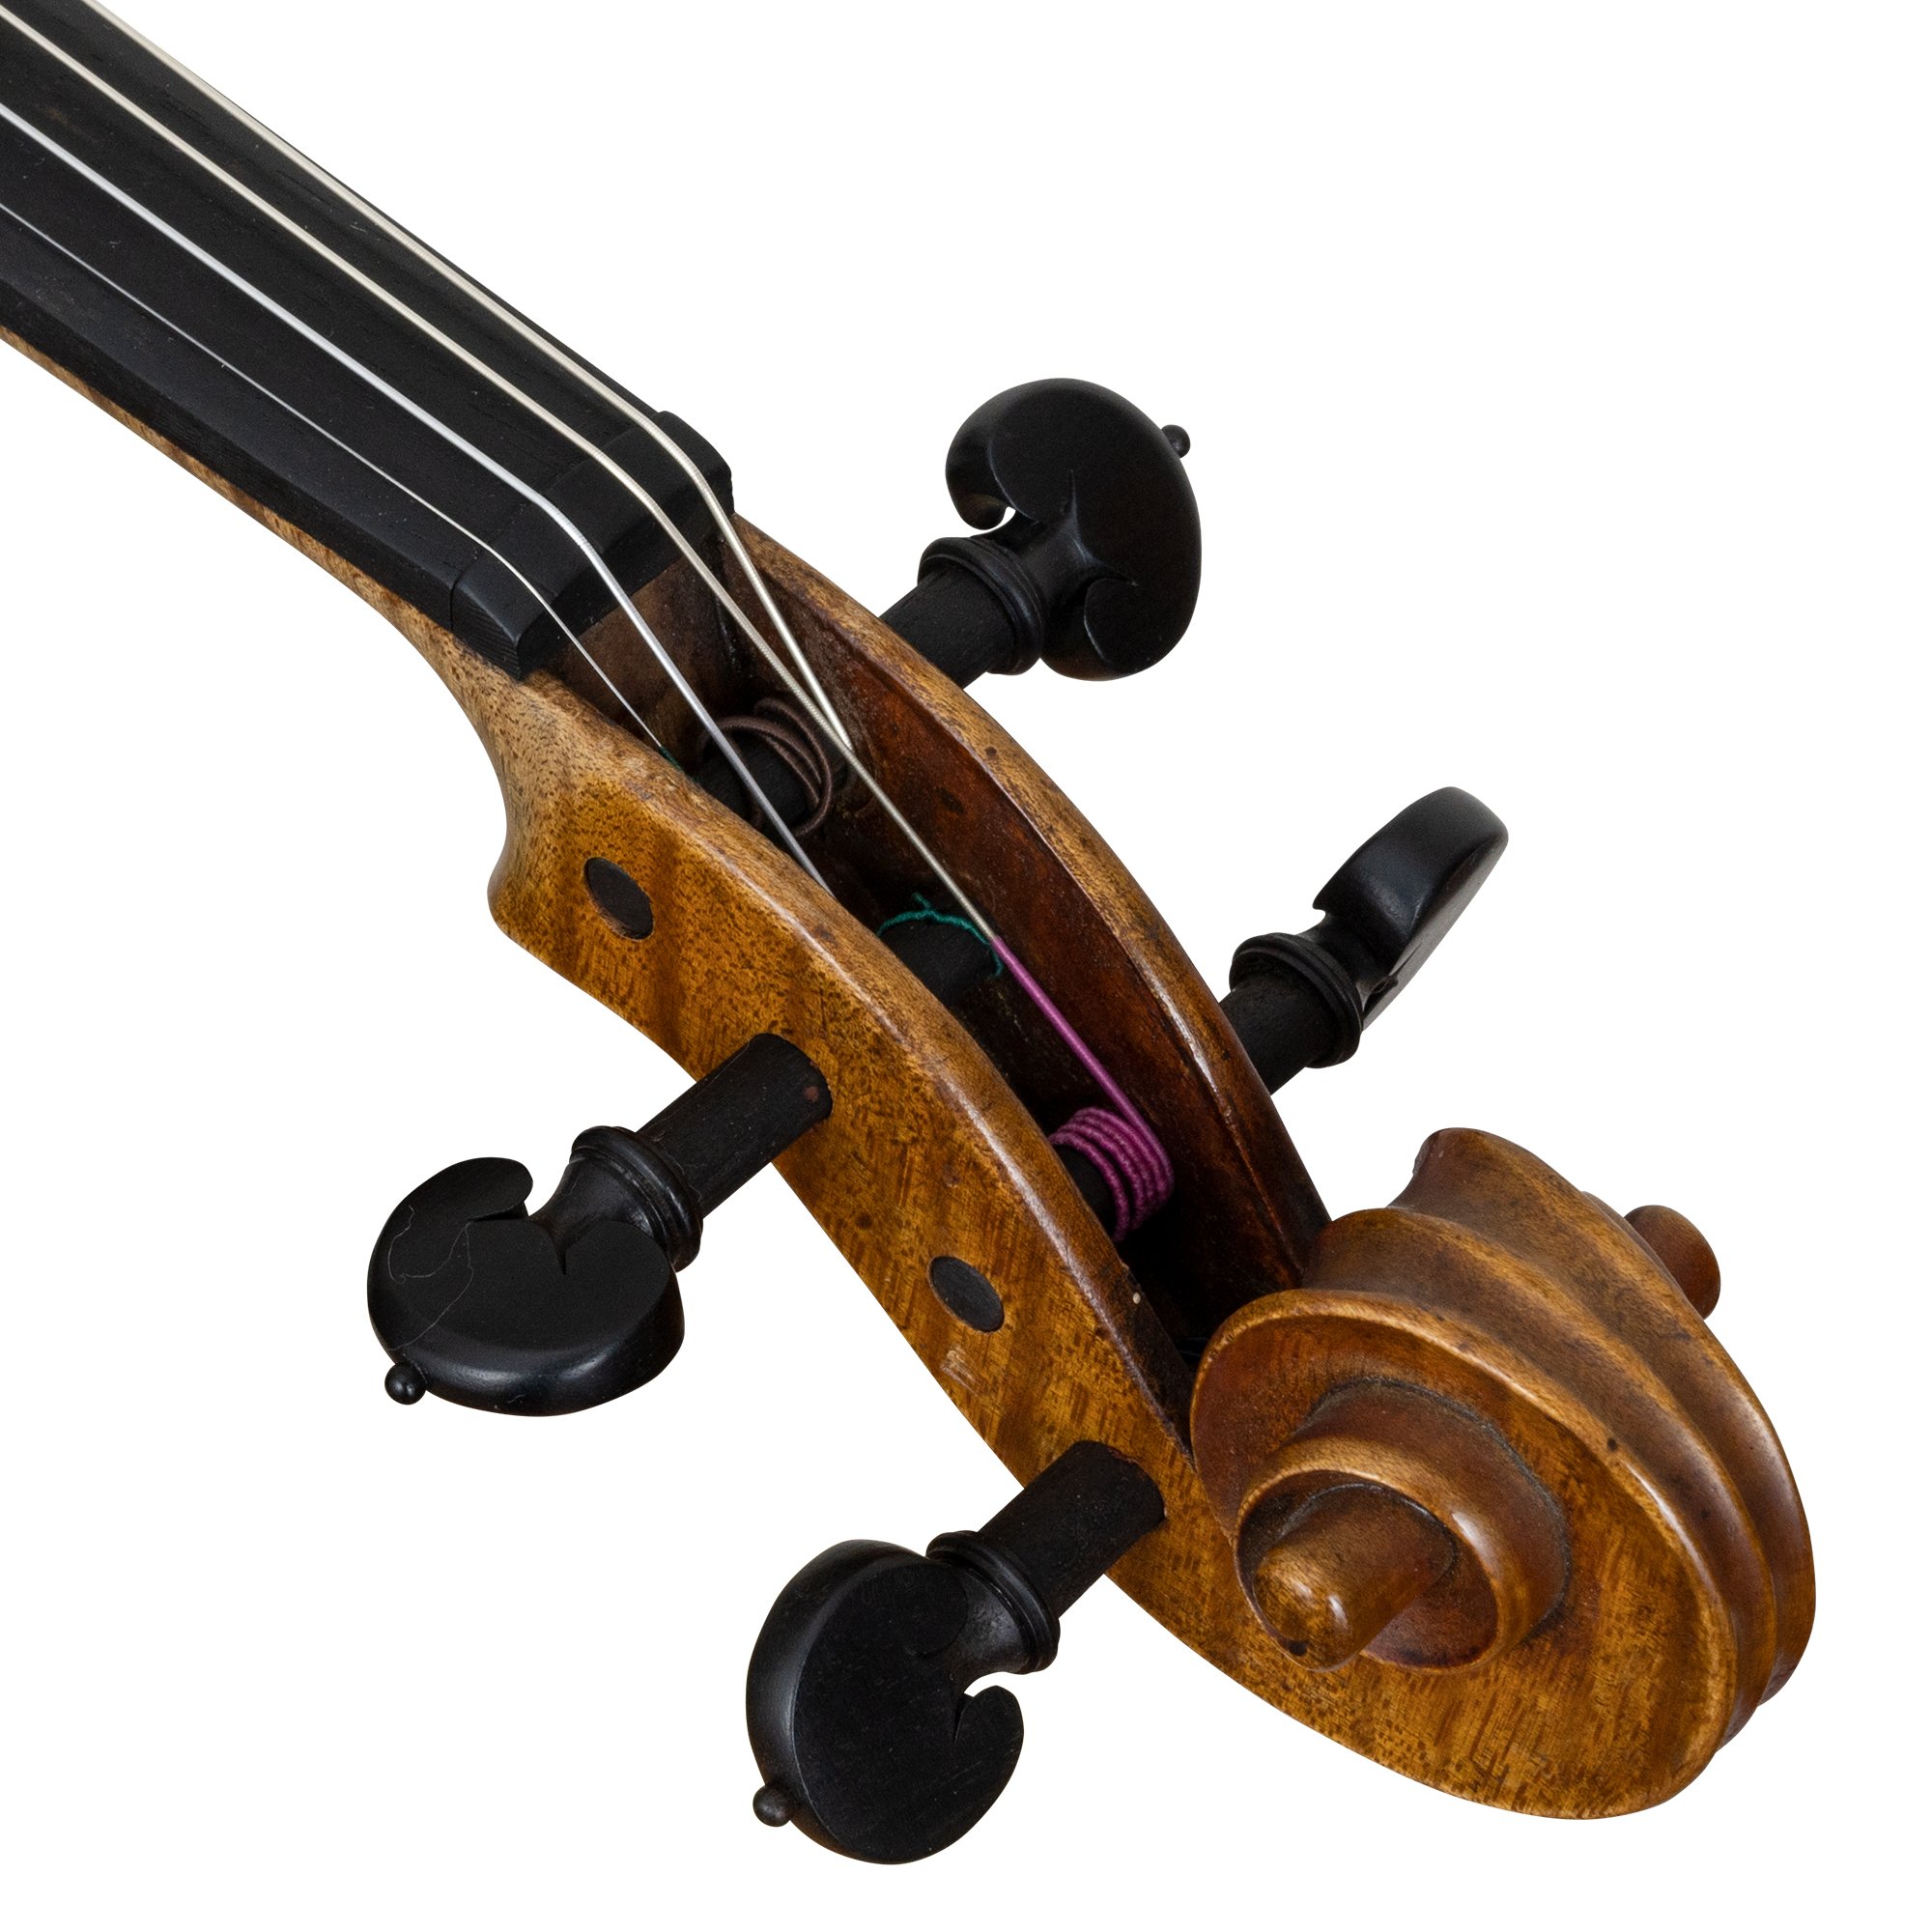 Curatoli 1906 Guarneri Model Violin in action